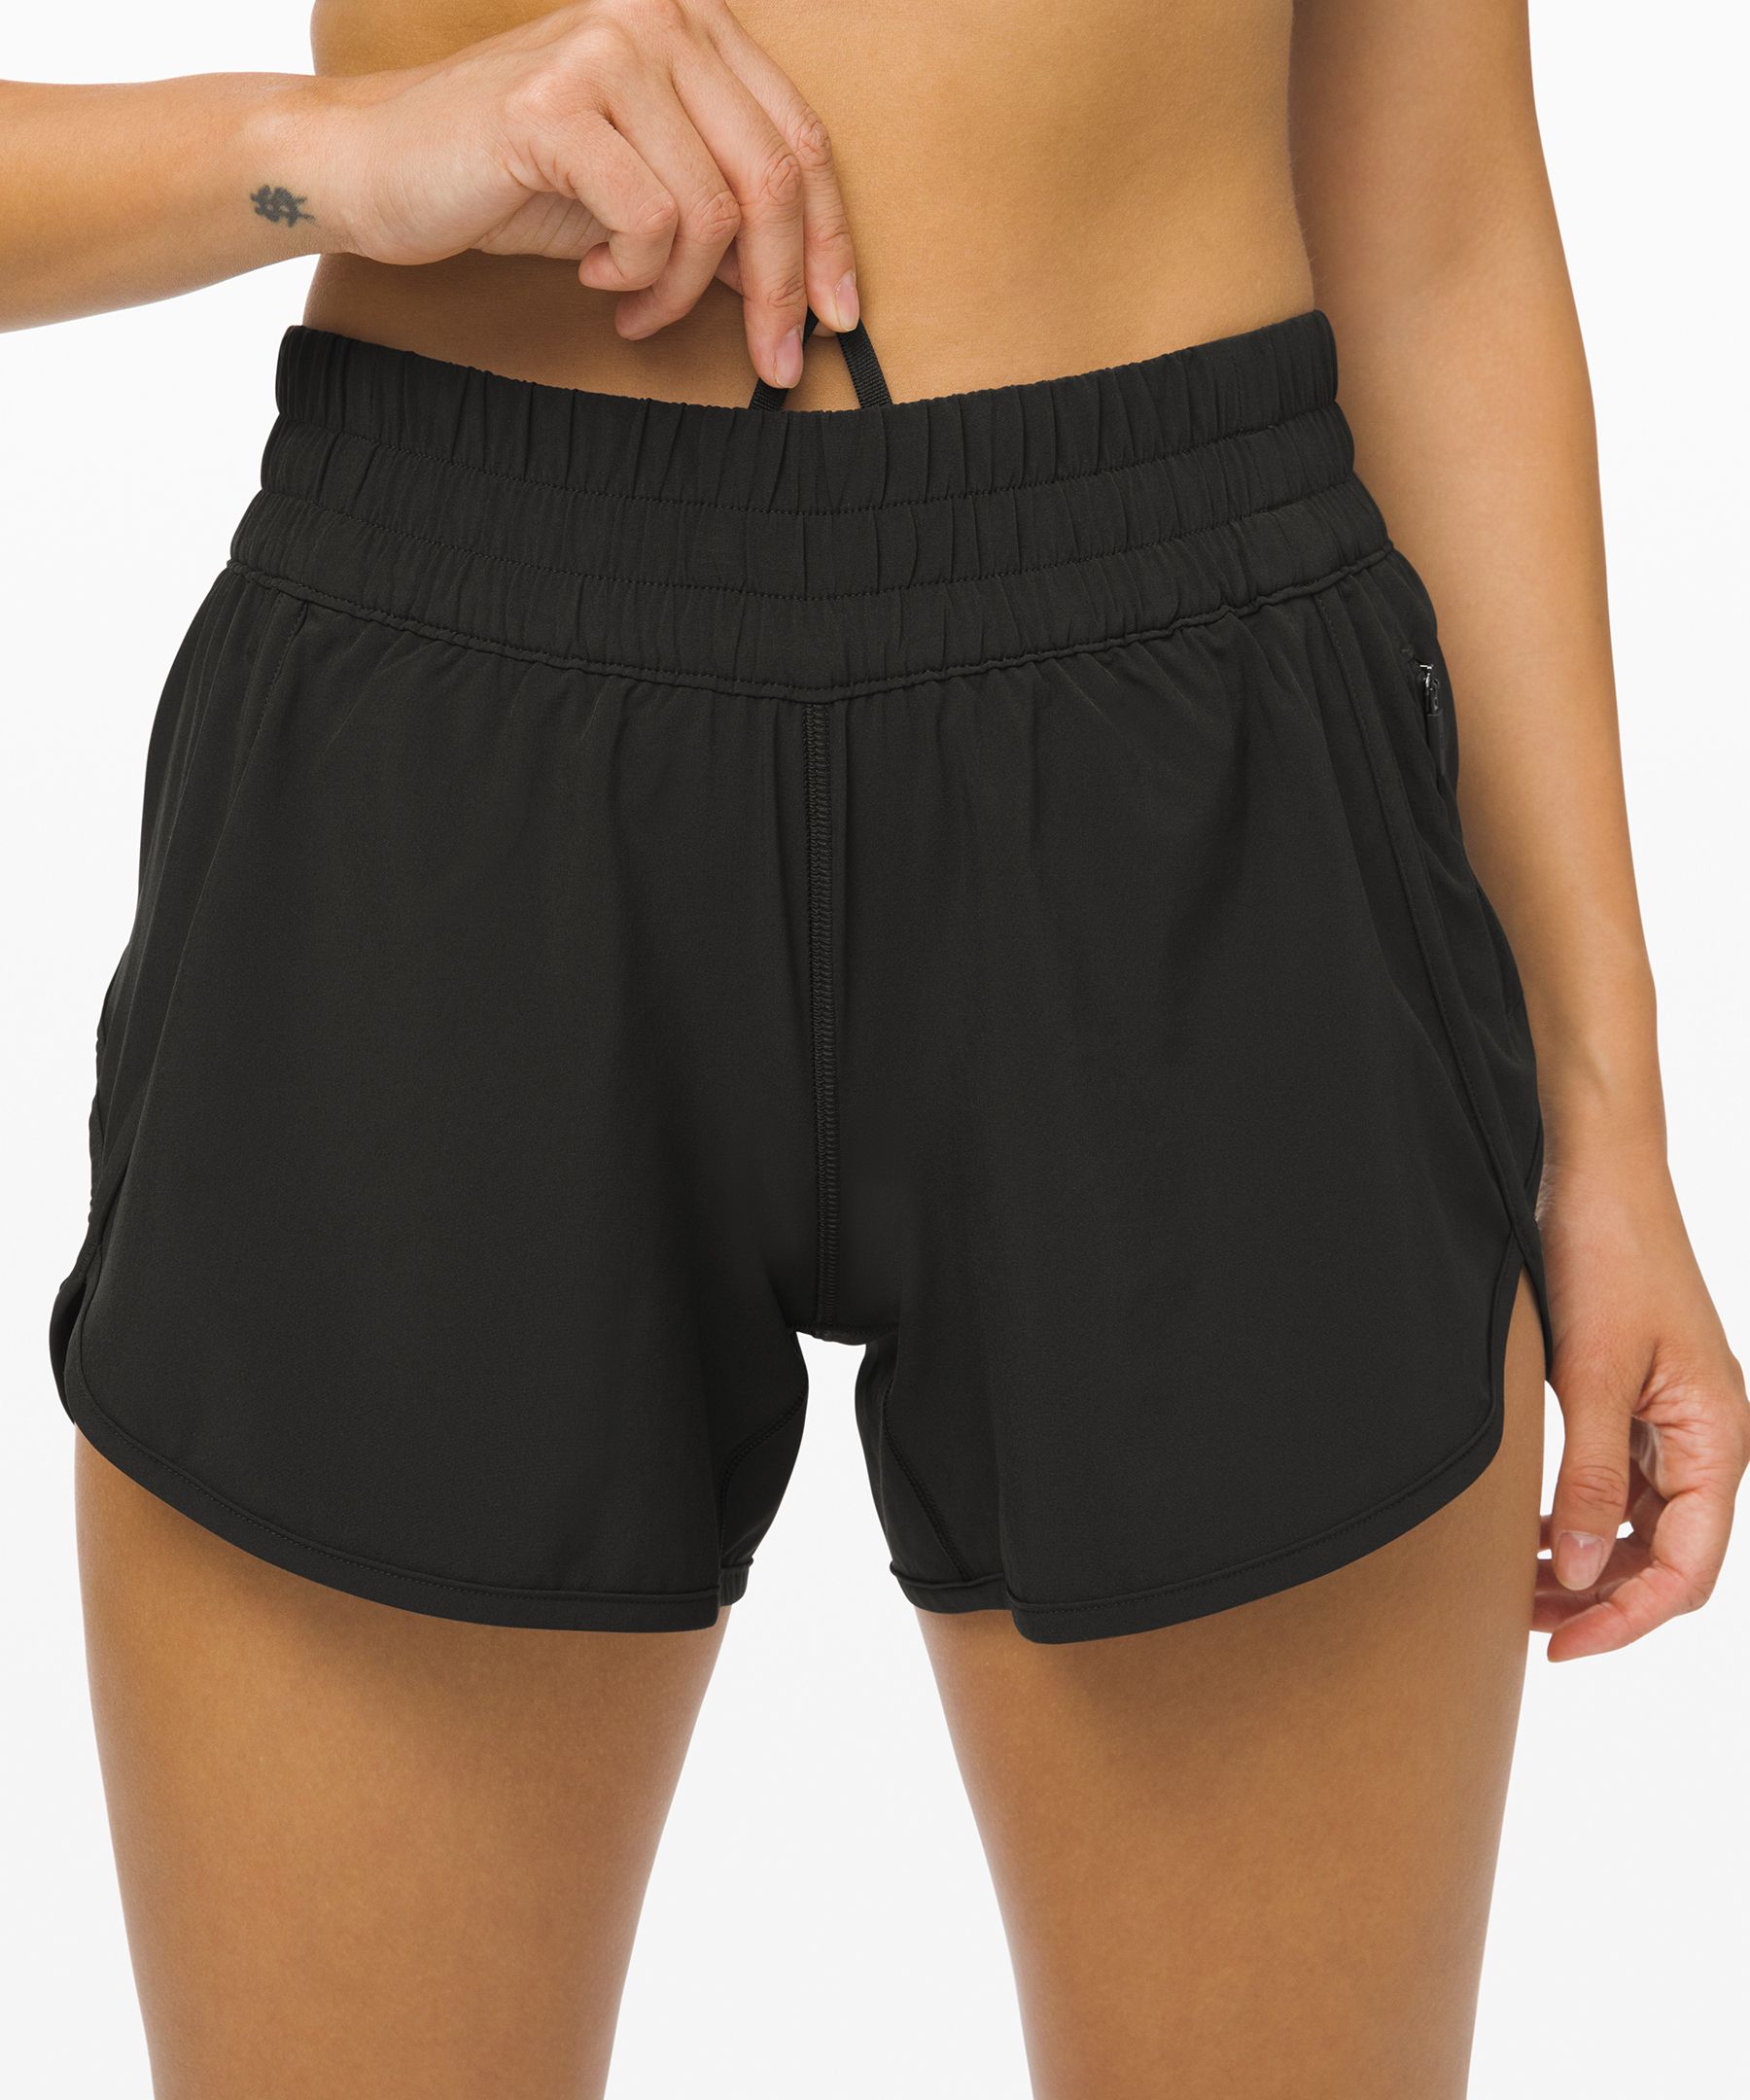 lululemon black athletic shorts